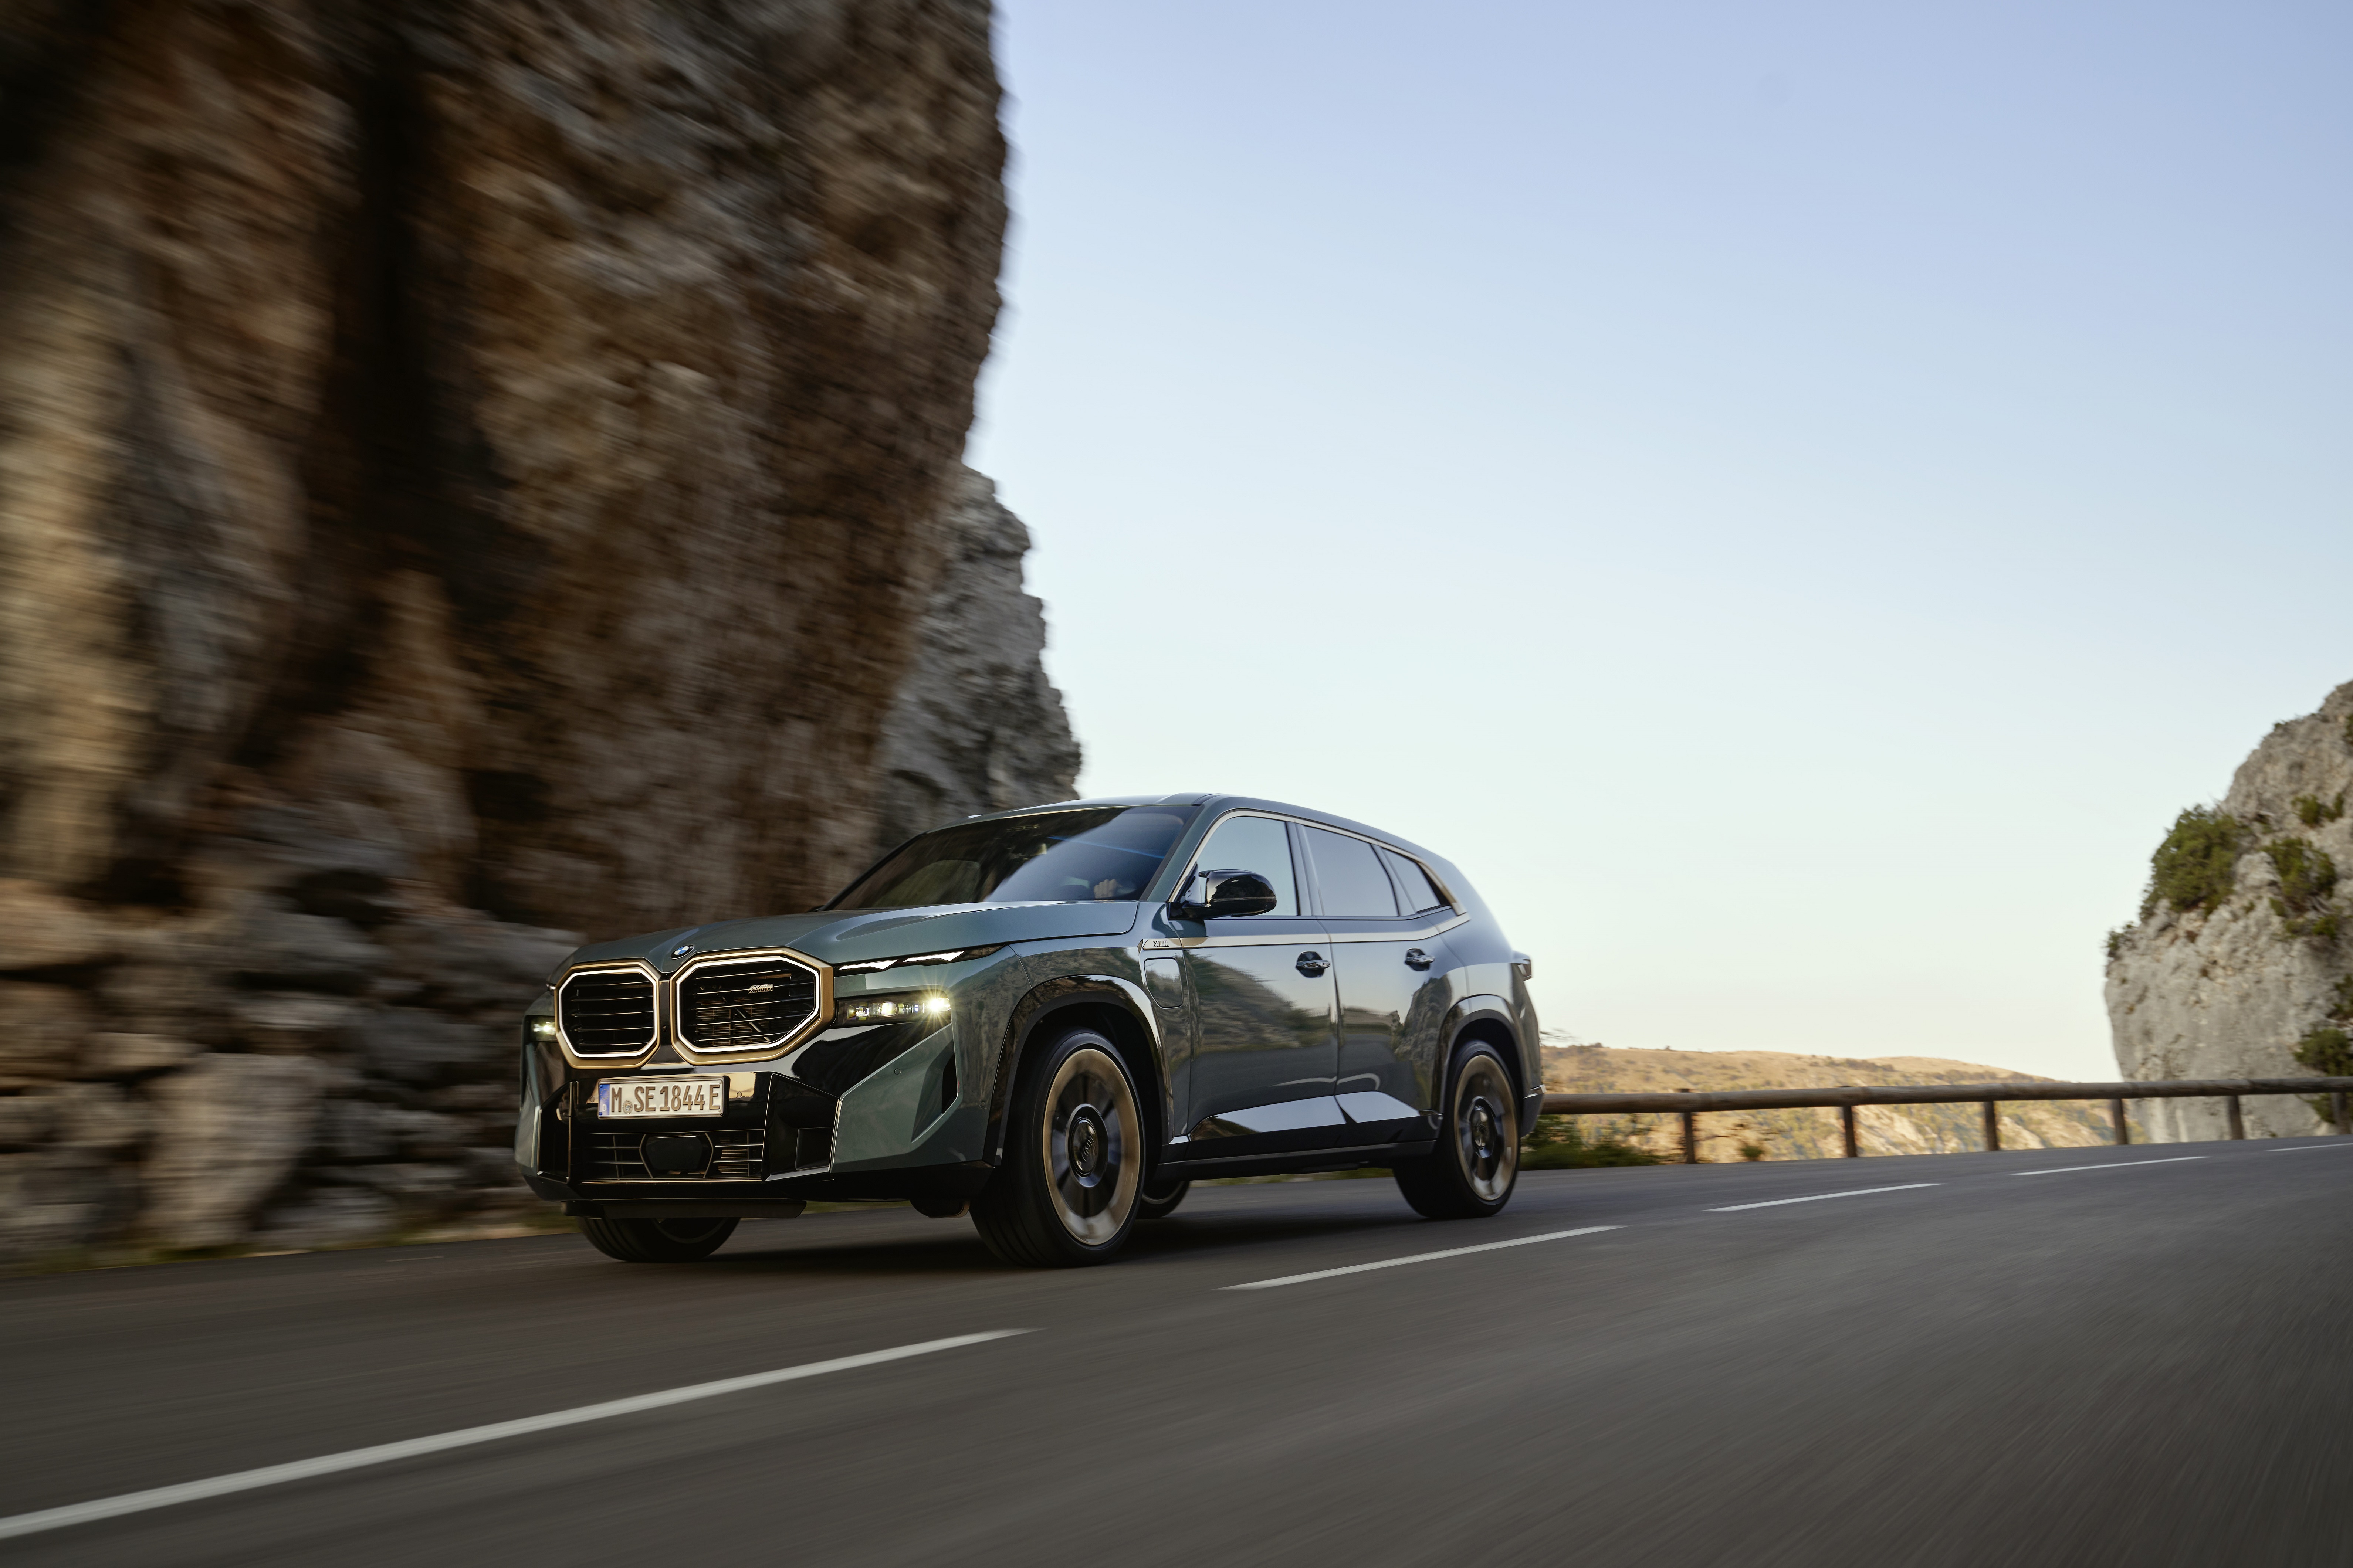 BMW XM arriba a Chile: Híbrido premium con diversas prestaciones